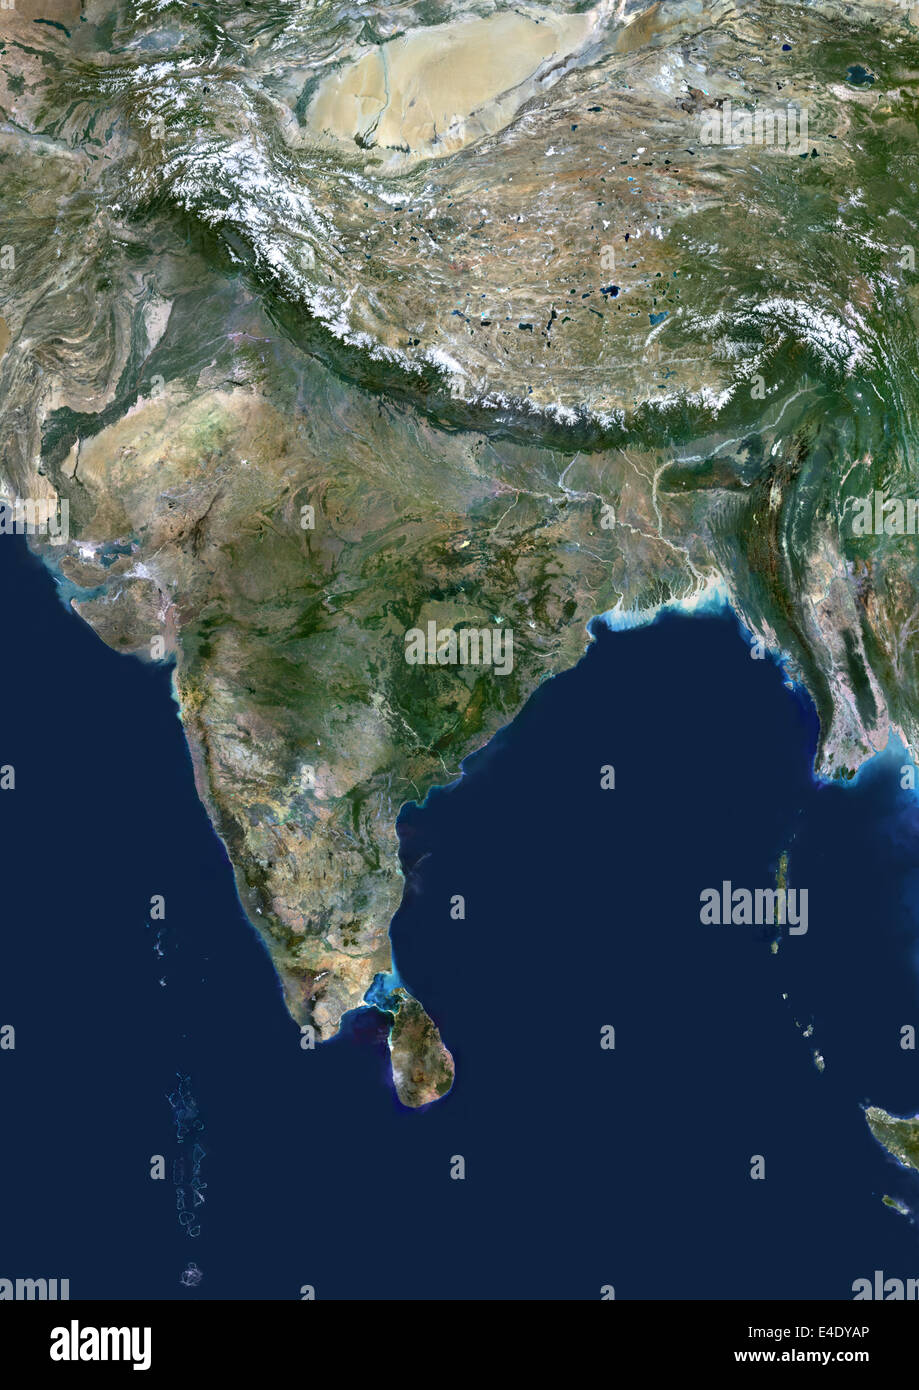 Indien, Echtfarben-Satellitenbild. Indien, Echtfarben-Satellitenbild. Dieses Bild zeigt den indischen Subkontinent, gesäumt von Pa Stockfoto